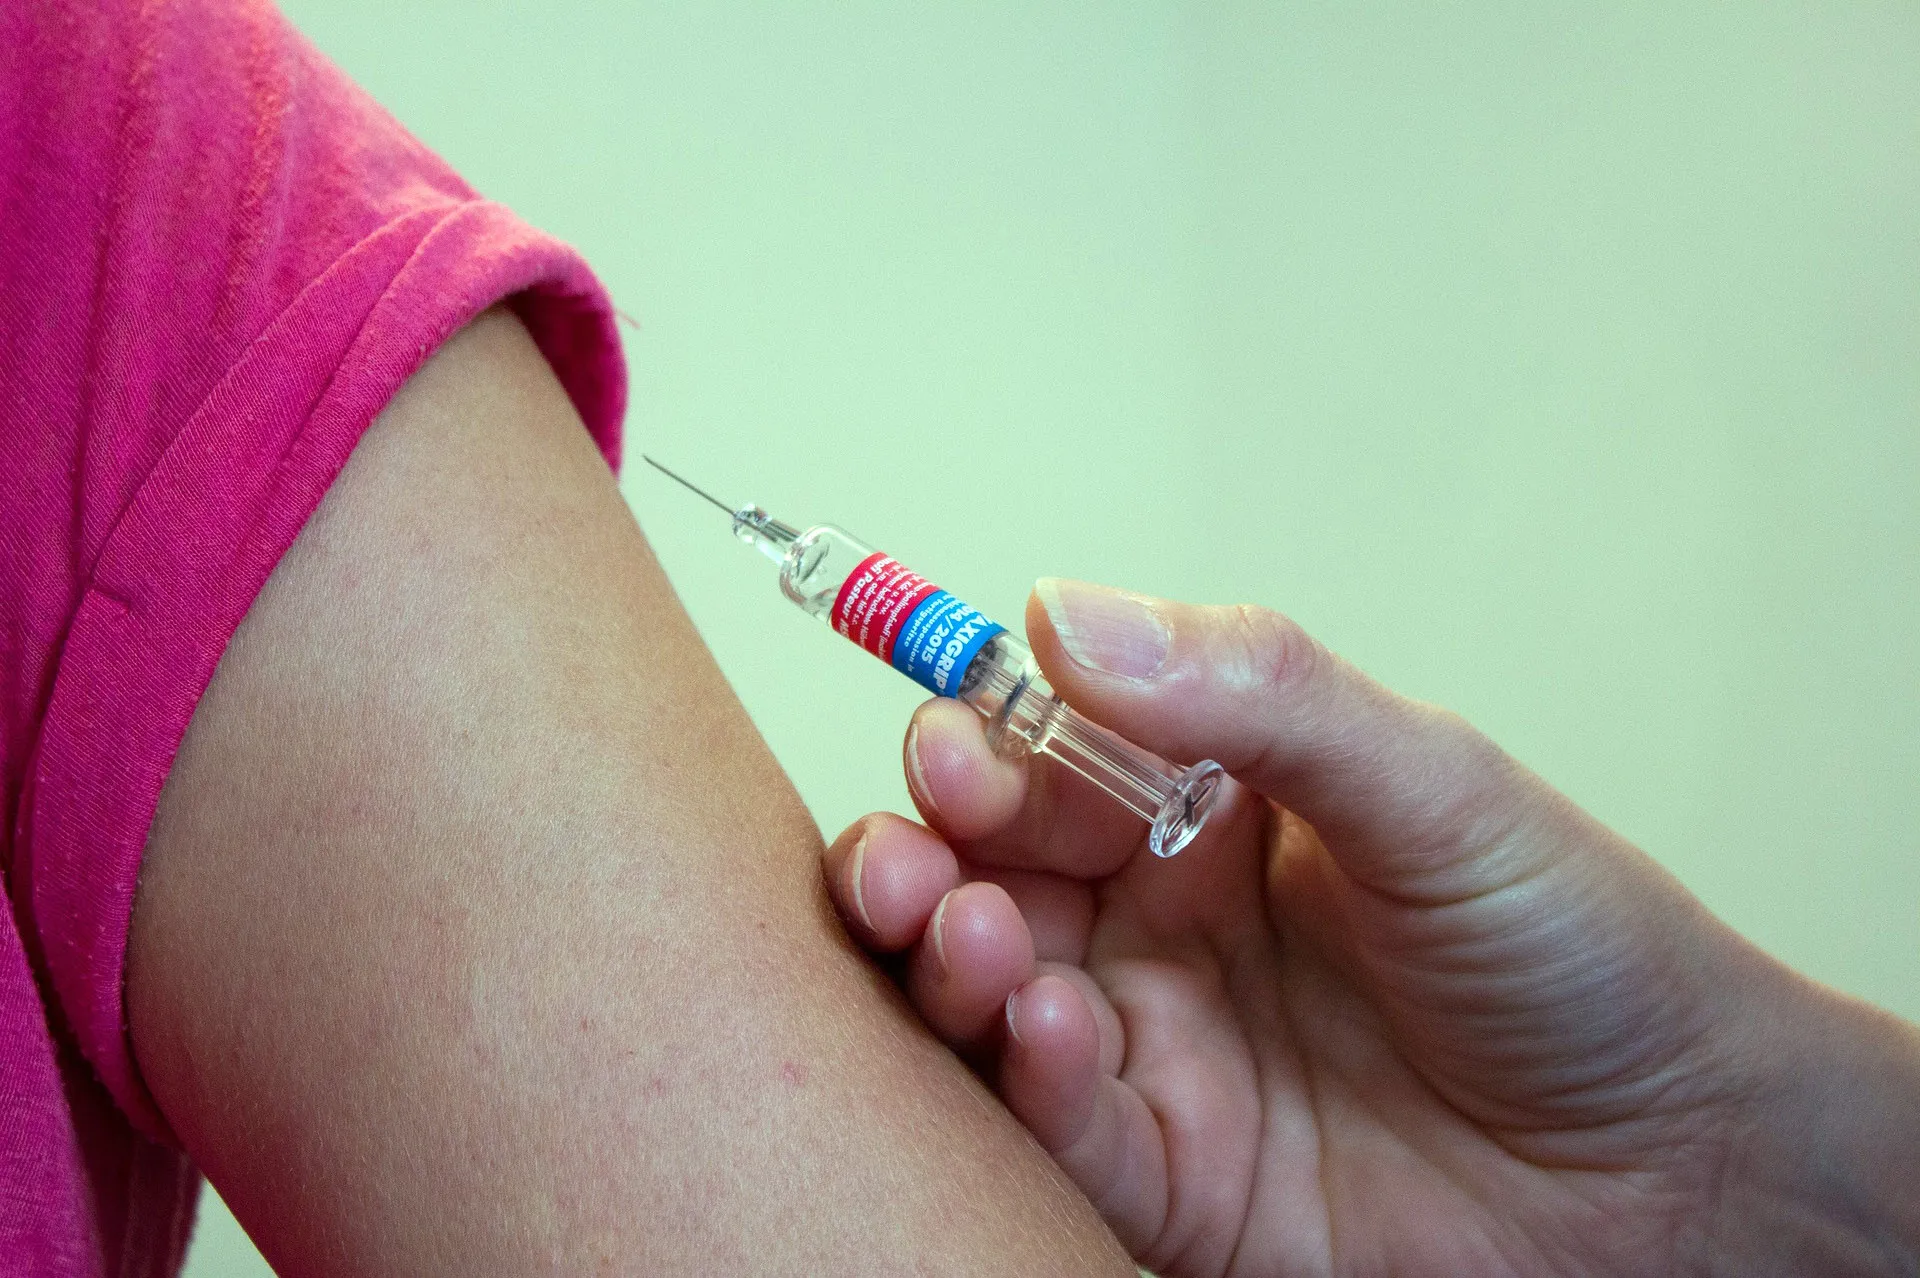 Salud Pública evalúa vacunar contra COVID-19 a niños mayores de 5 años